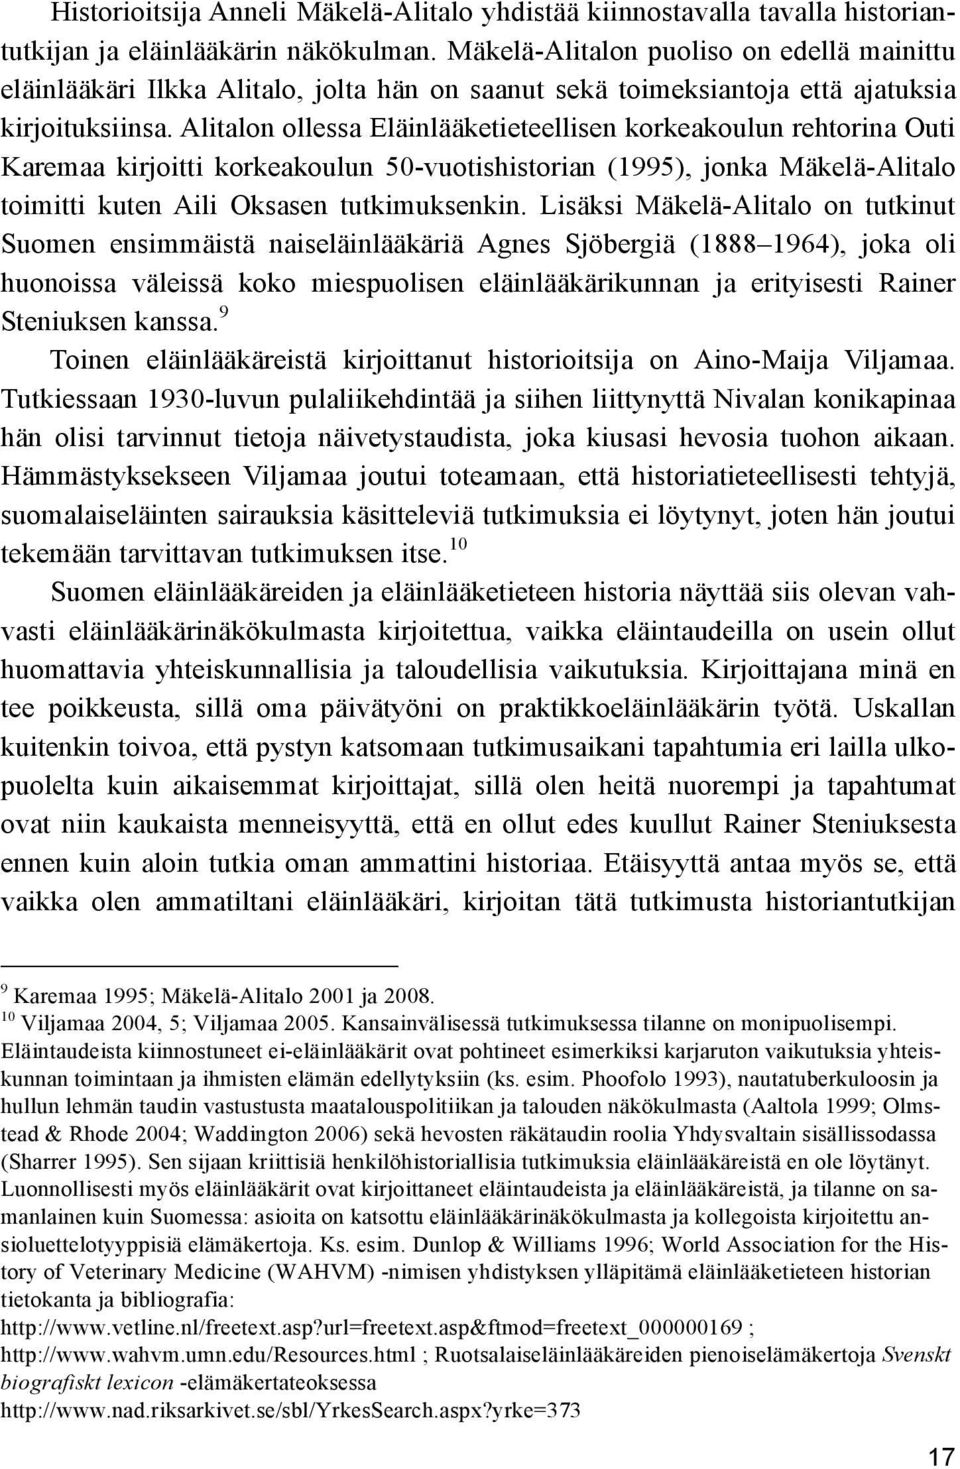 Alitalon ollessa Eläinlääketieteellisen korkeakoulun rehtorina Outi Karemaa kirjoitti korkeakoulun 50-vuotishistorian (1995), jonka Mäkelä-Alitalo toimitti kuten Aili Oksasen tutkimuksenkin.